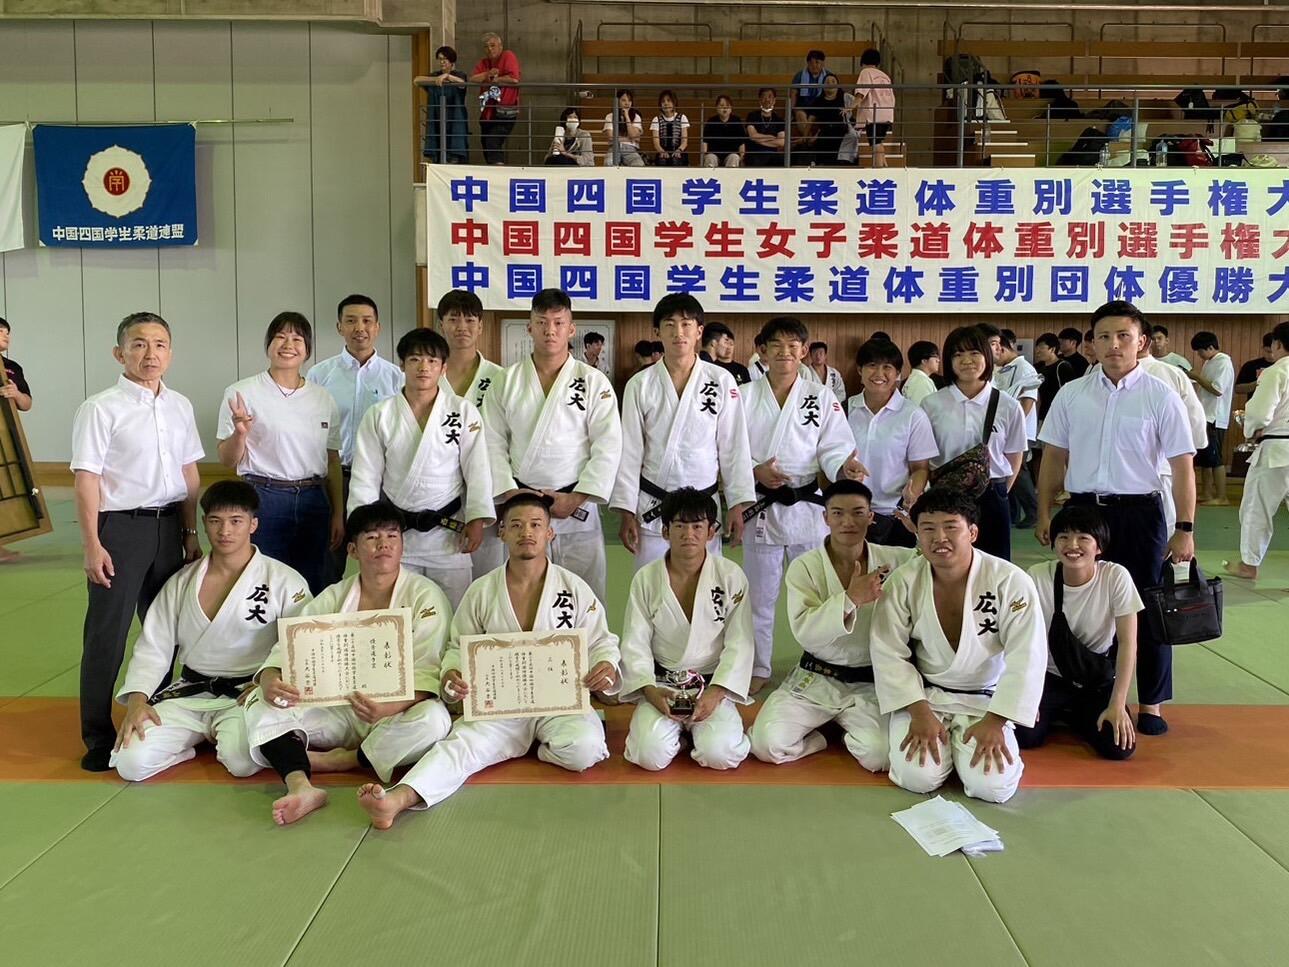 体育会柔道部が全日本学生柔道体重別団体優勝大会に出場します